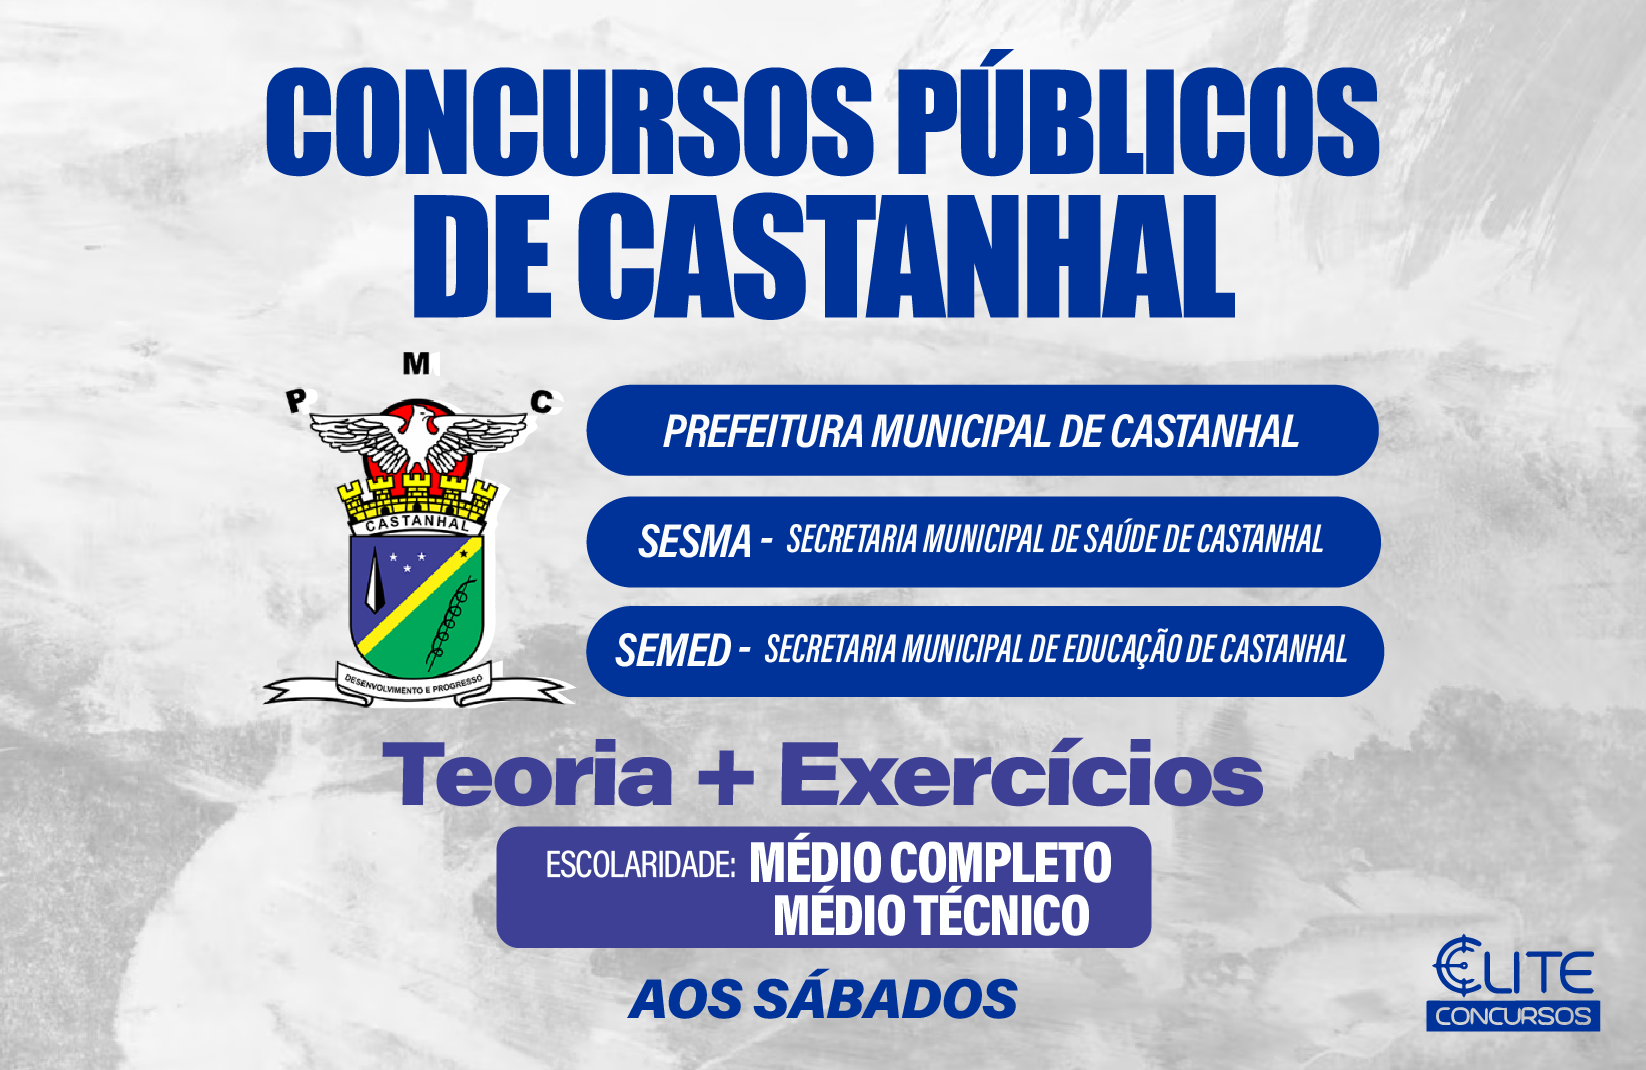 Prefeitura Municipal de Castanhal - PMC, SESMA E SEMED - Mdio Completo e Mdio Tcnico - 06/04